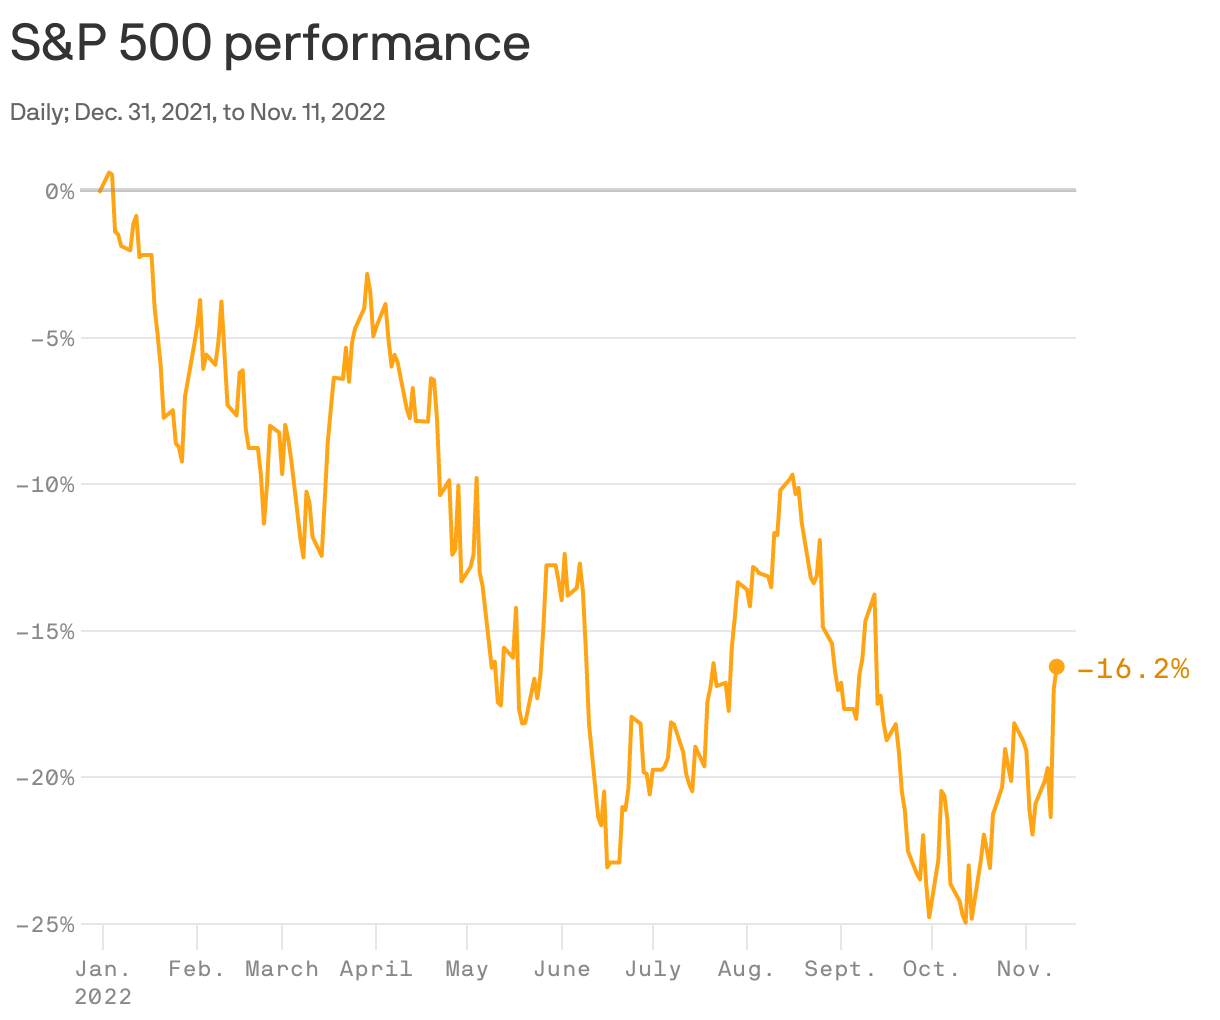 S&P 500 performance